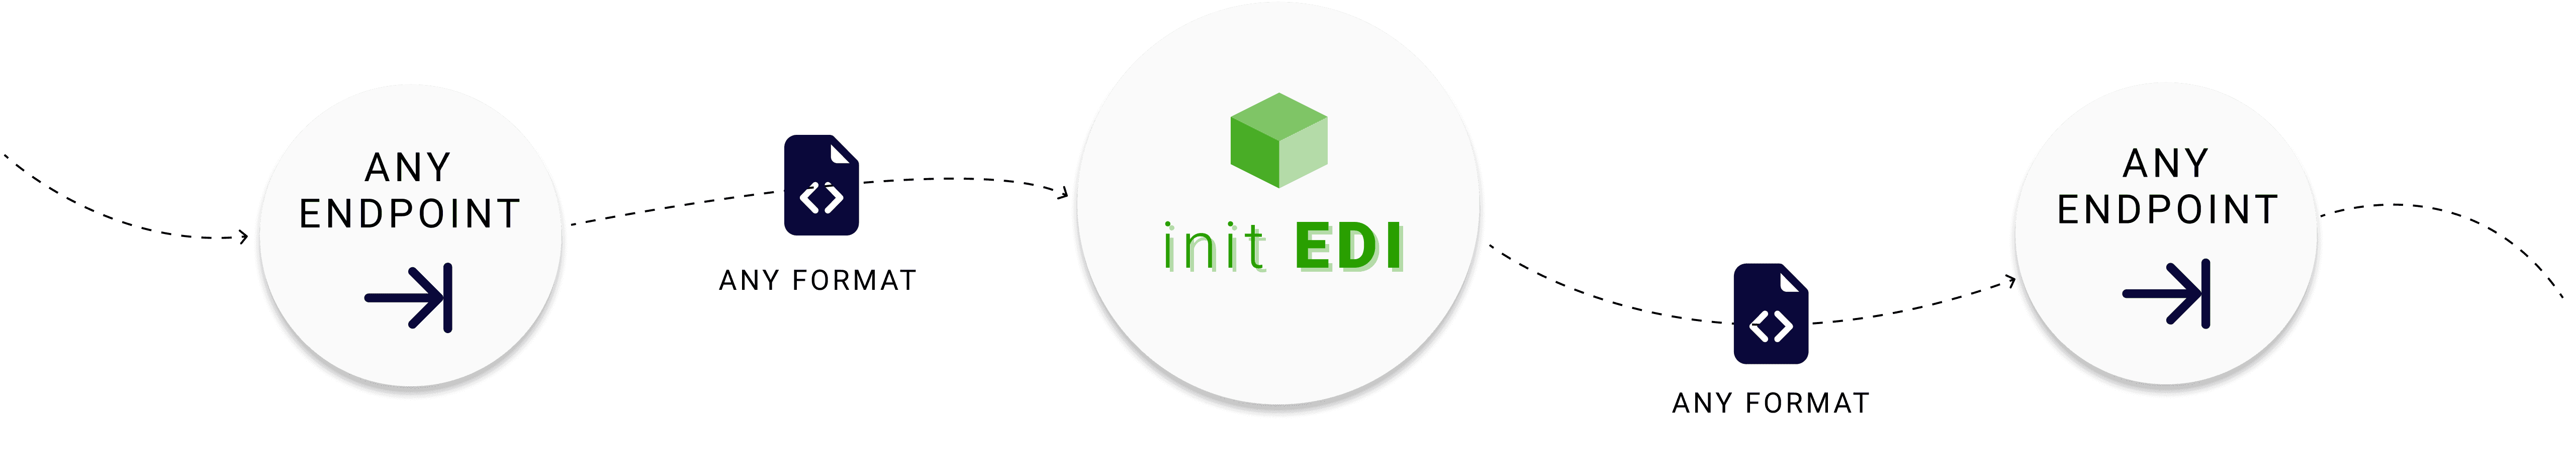 init EDI process